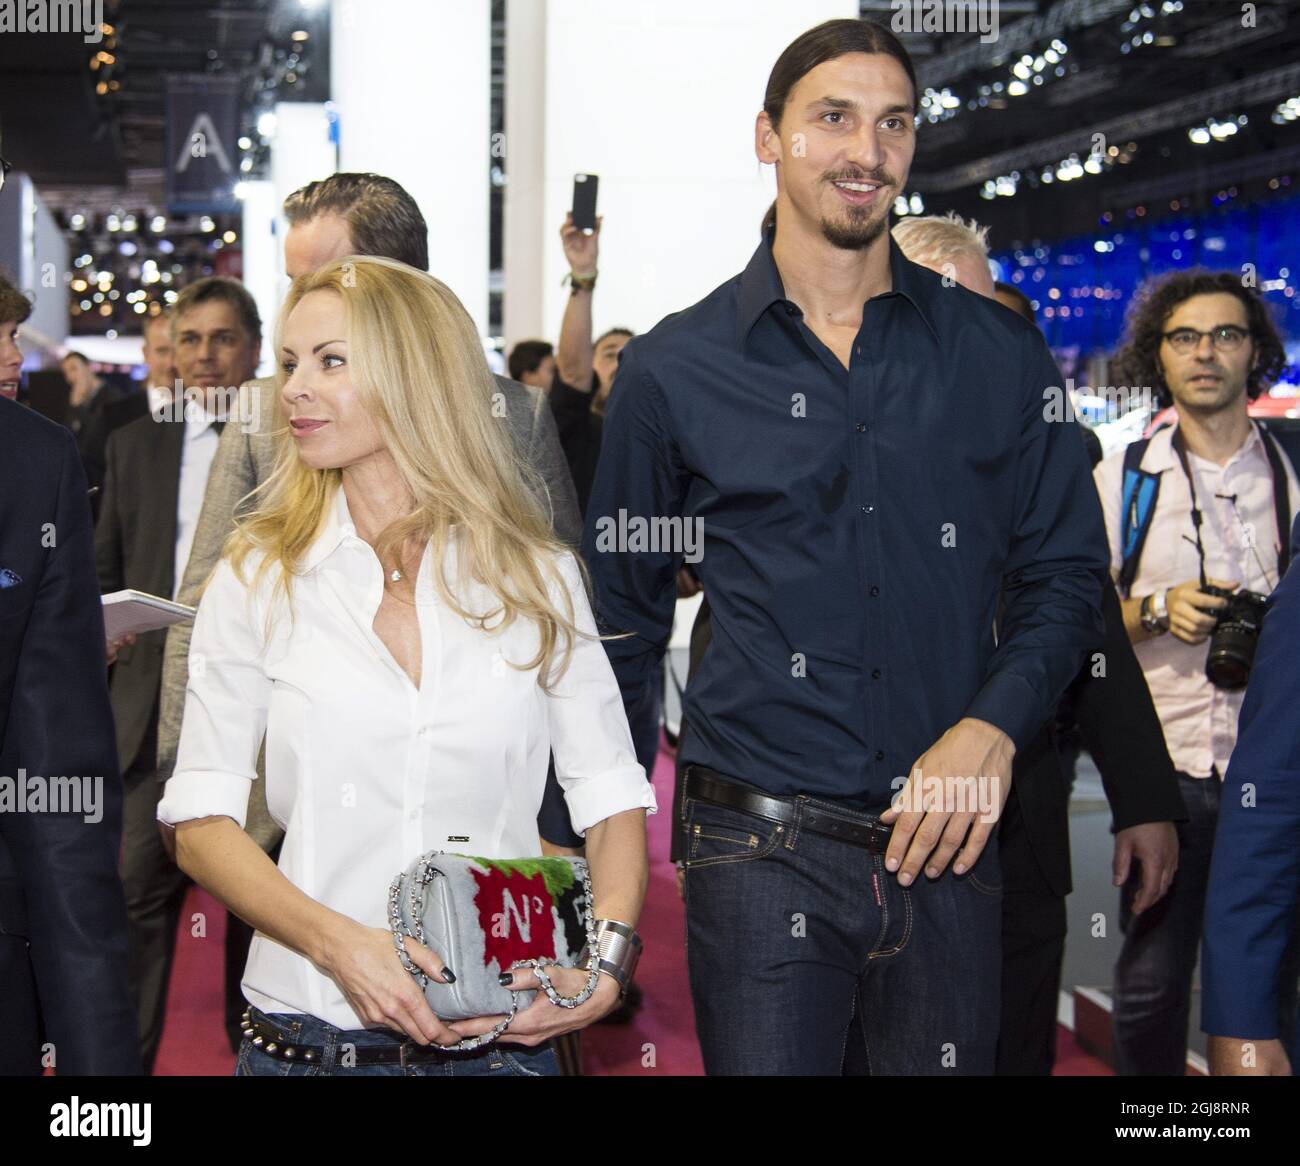 PARIS 2014-09-02 le footballeur suédois Zlatan Ibrahimovic et sa femme  Helena Seger sont vus dans la salle Volvo du salon de l'automobile de Paris  à Paris, France, le 2 octobre 2014. Zlatan